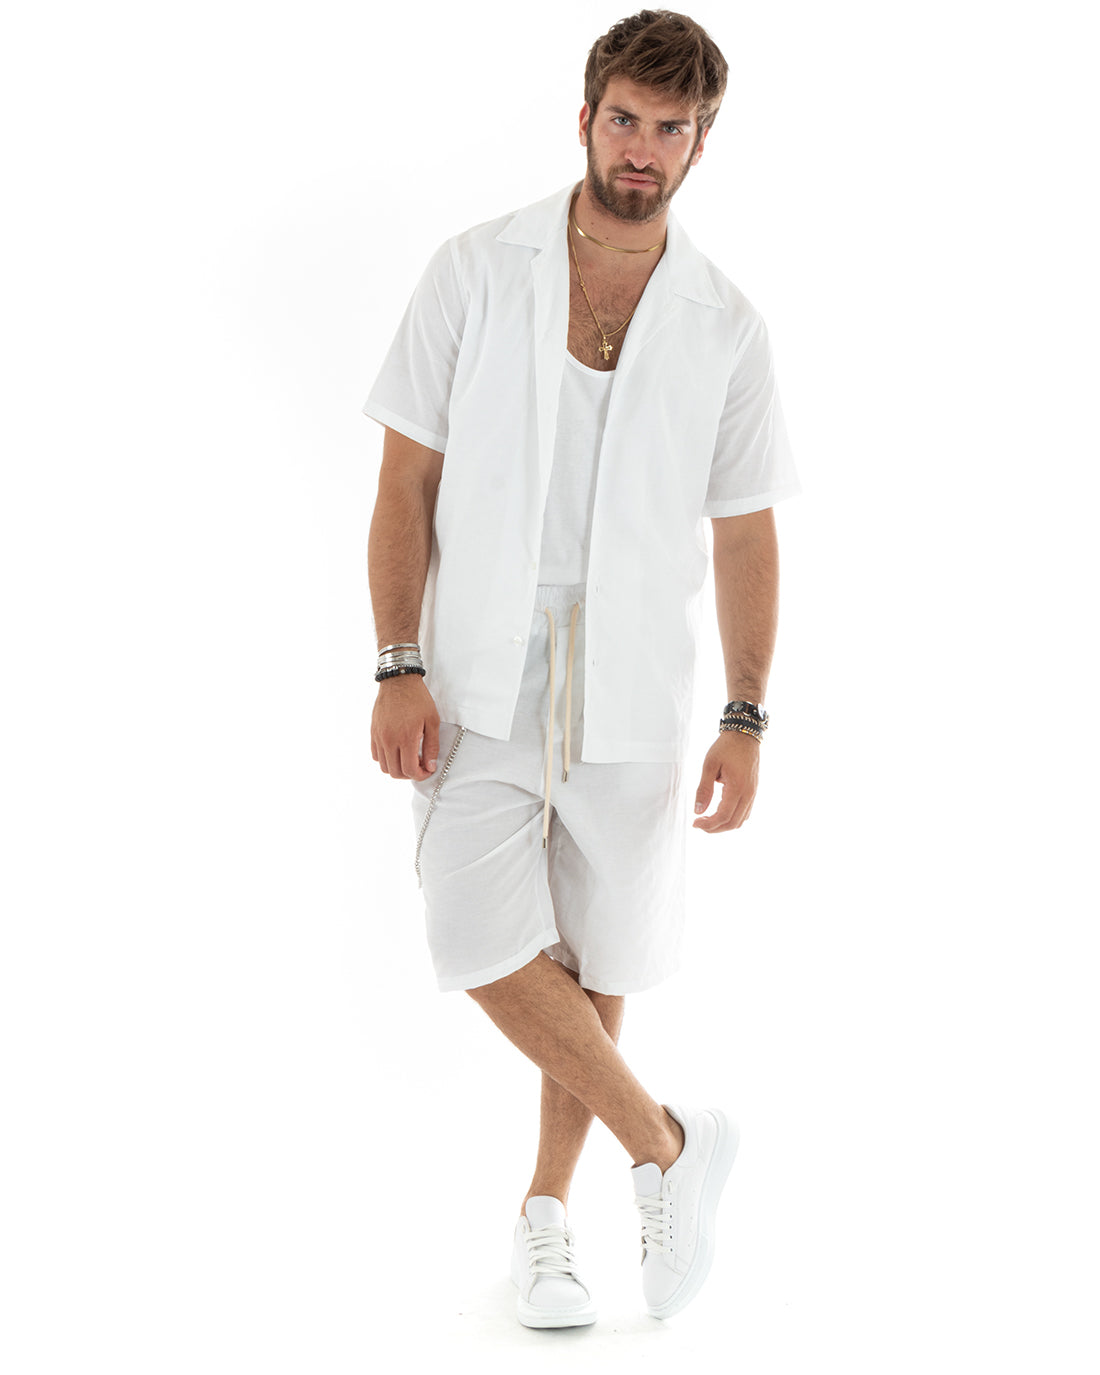 Completo Set Coordinato Uomo Viscosa Camicia Con Colletto Bermuda Outfit Bianco GIOSAL-OU2358A